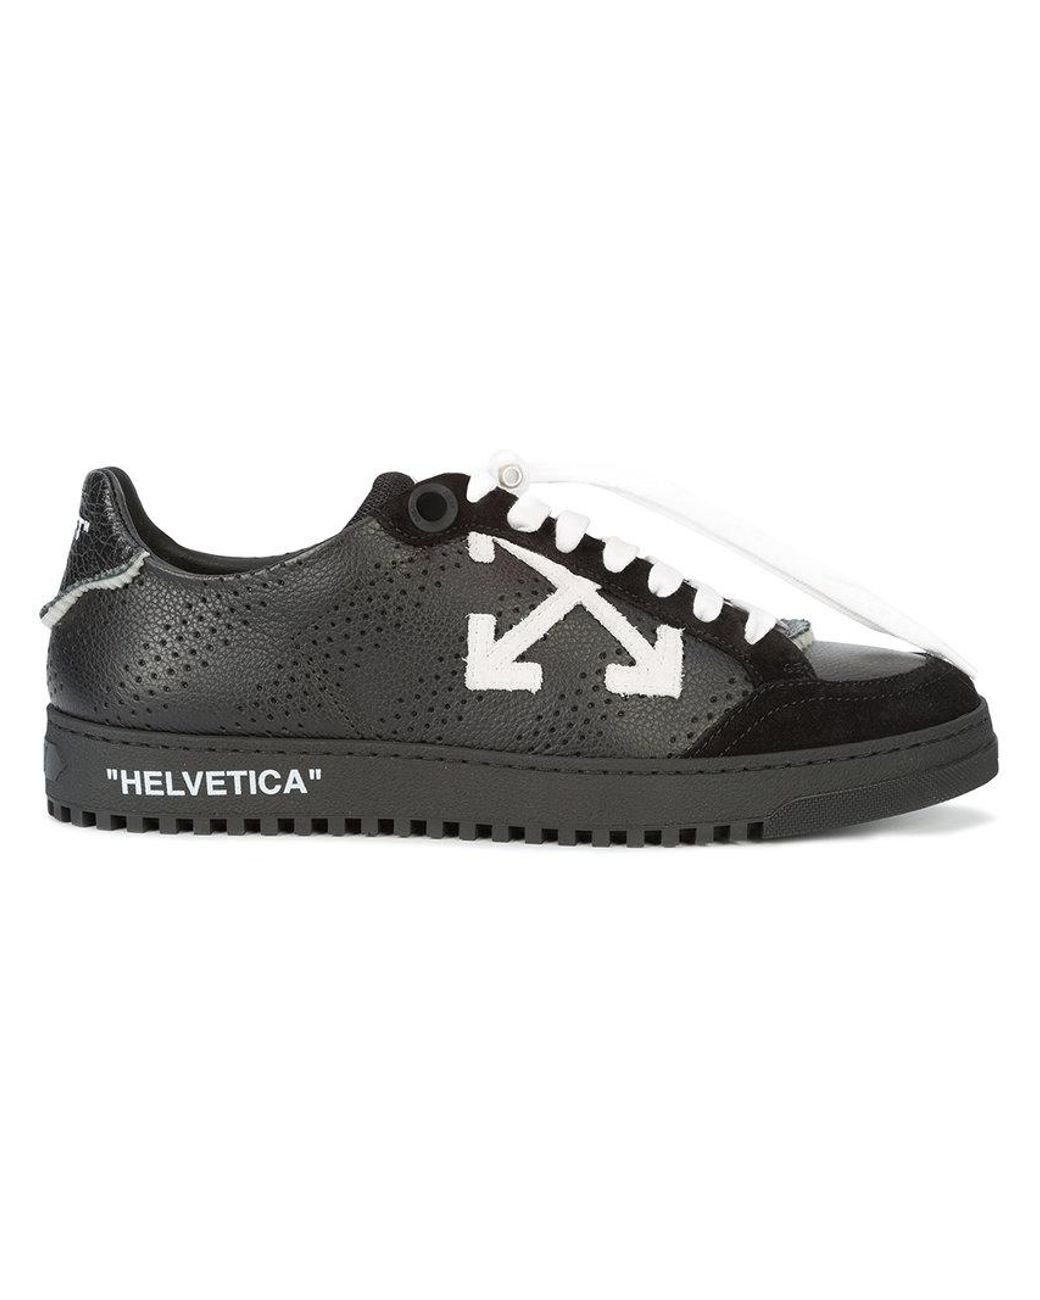 Off-White c/o Virgil Abloh Helvetica Sneakers in Black for Men | Lyst